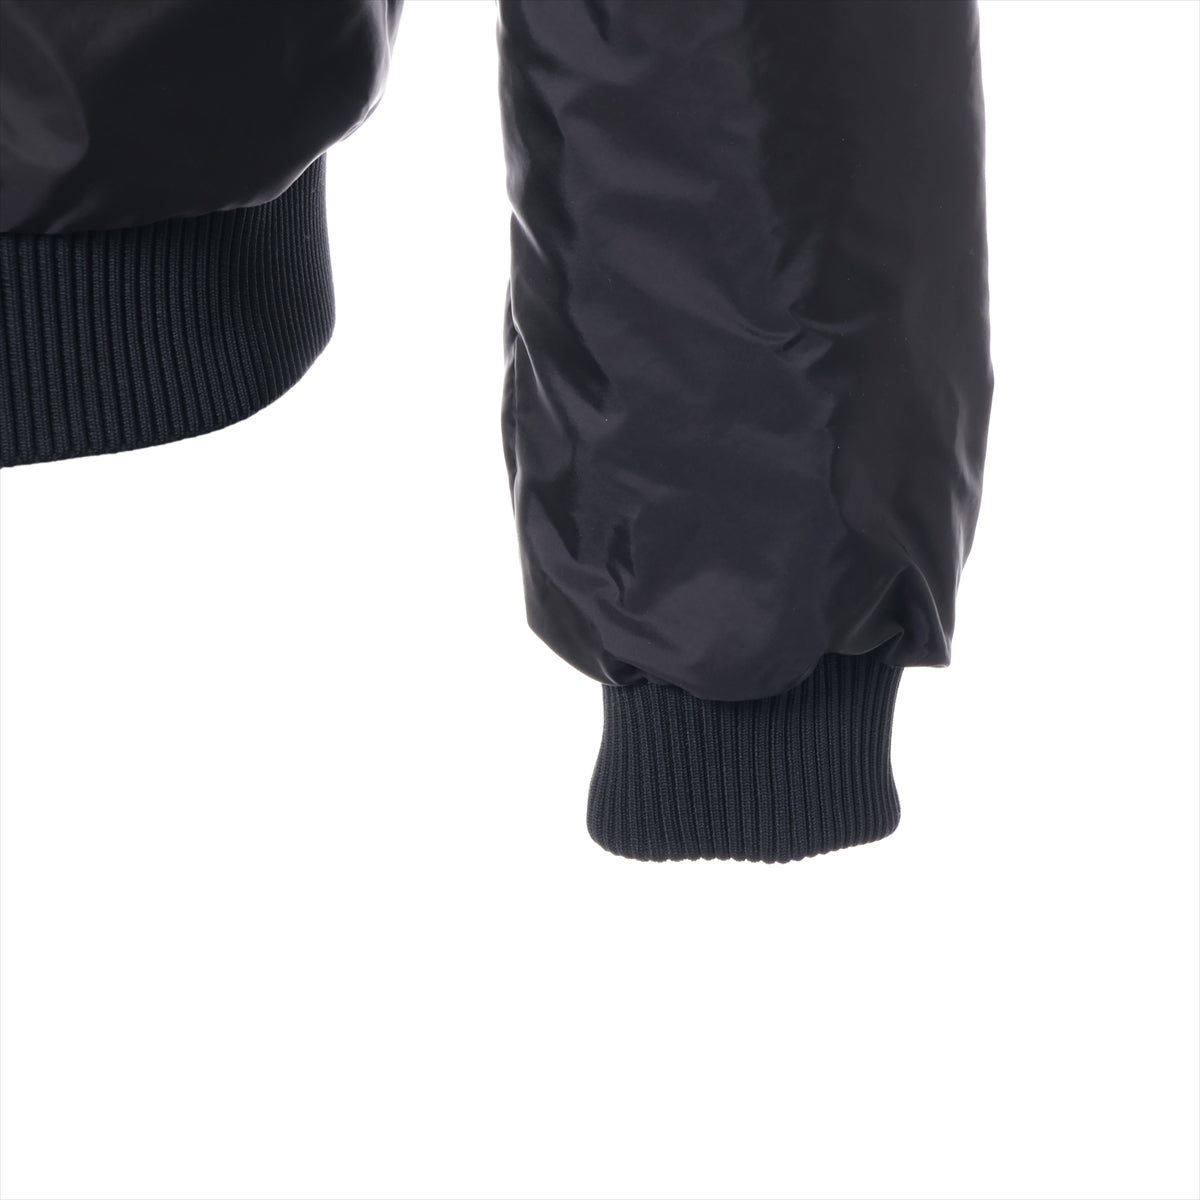 Prada 20 years Nylon & Leather Leather jacket 44 Men's Black  Lambskin UPW368 Triangle logo Reversible